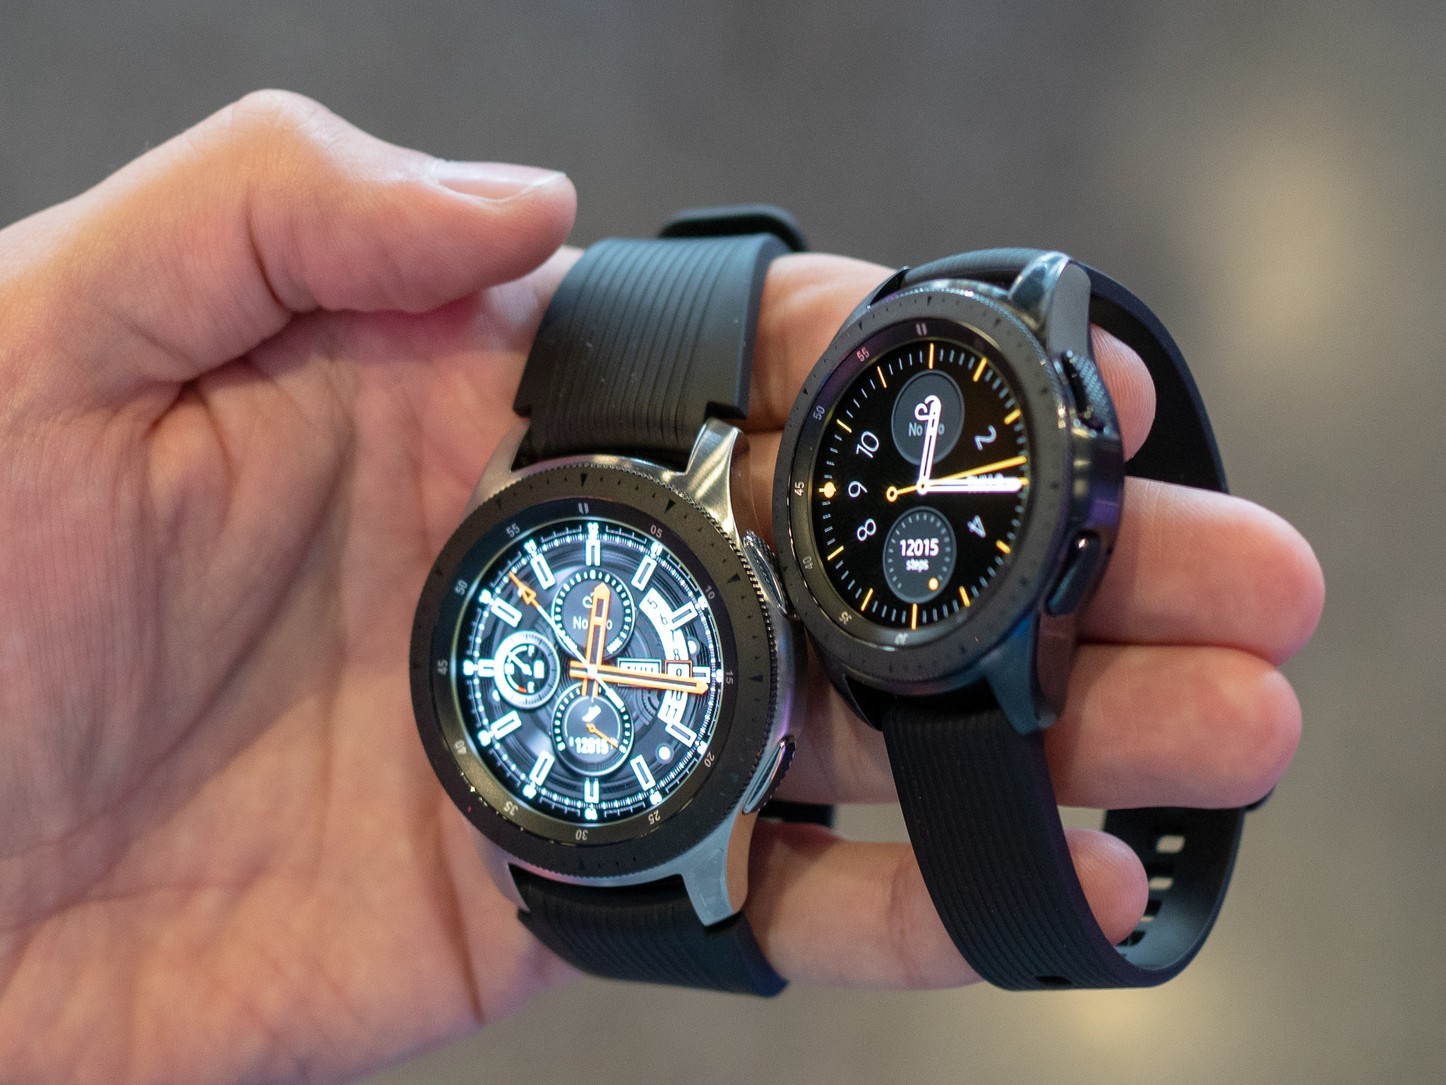 Samsung mở bán đồng hồ thông minh Galaxy Watch tại Việt Nam, giá từ 7 triệu đồng